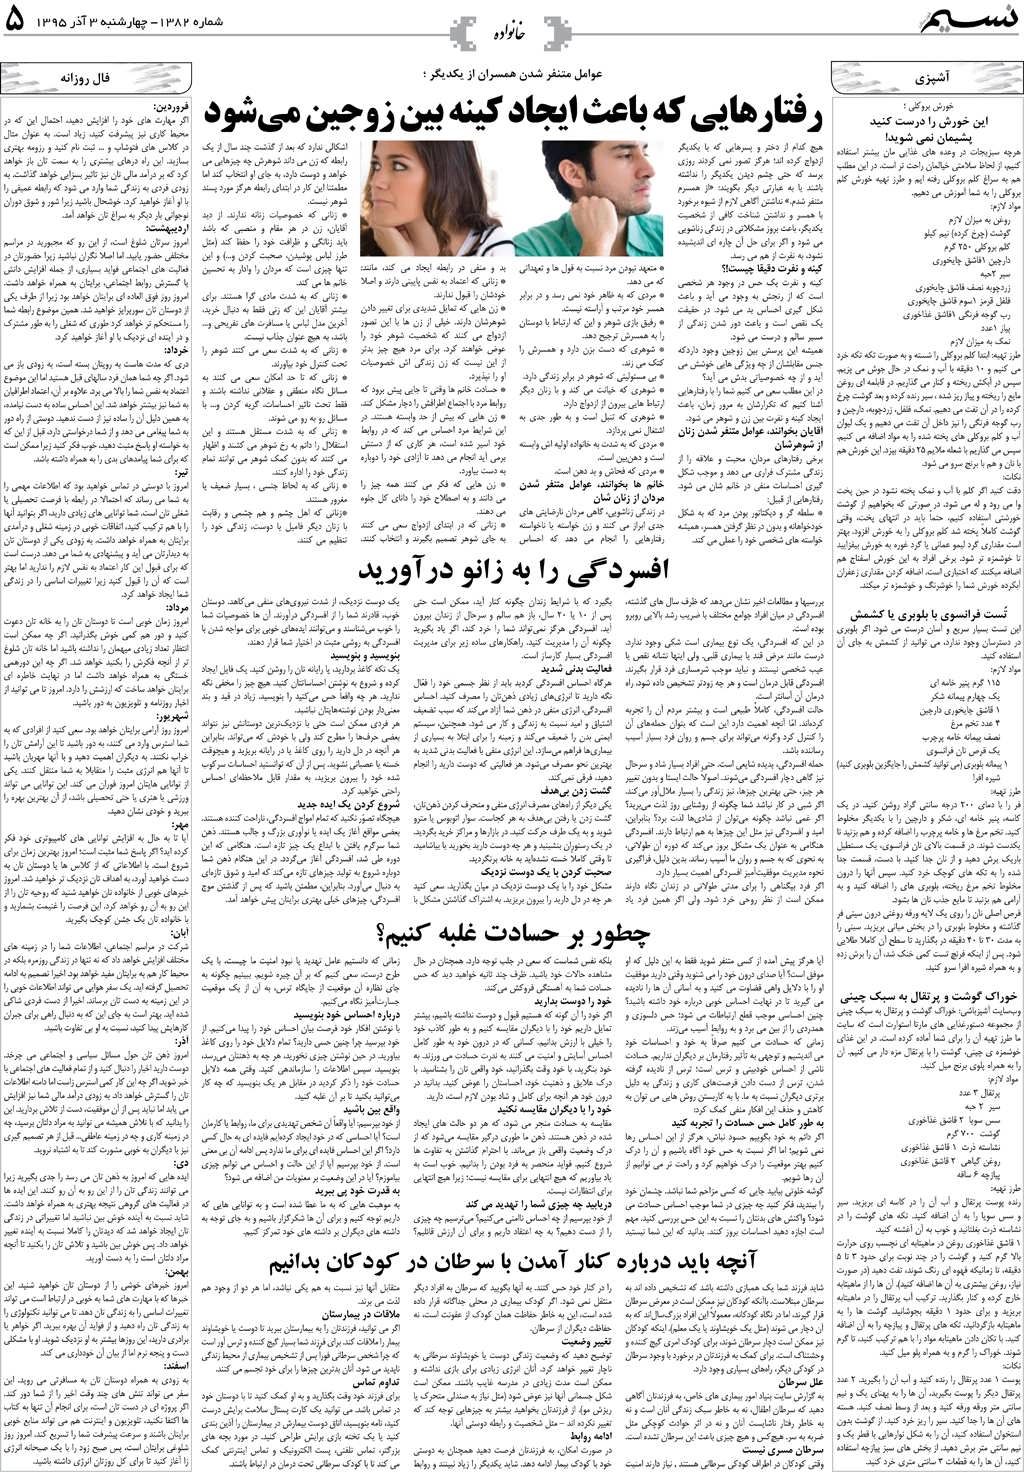 صفحه خانواده روزنامه نسیم شماره 1382